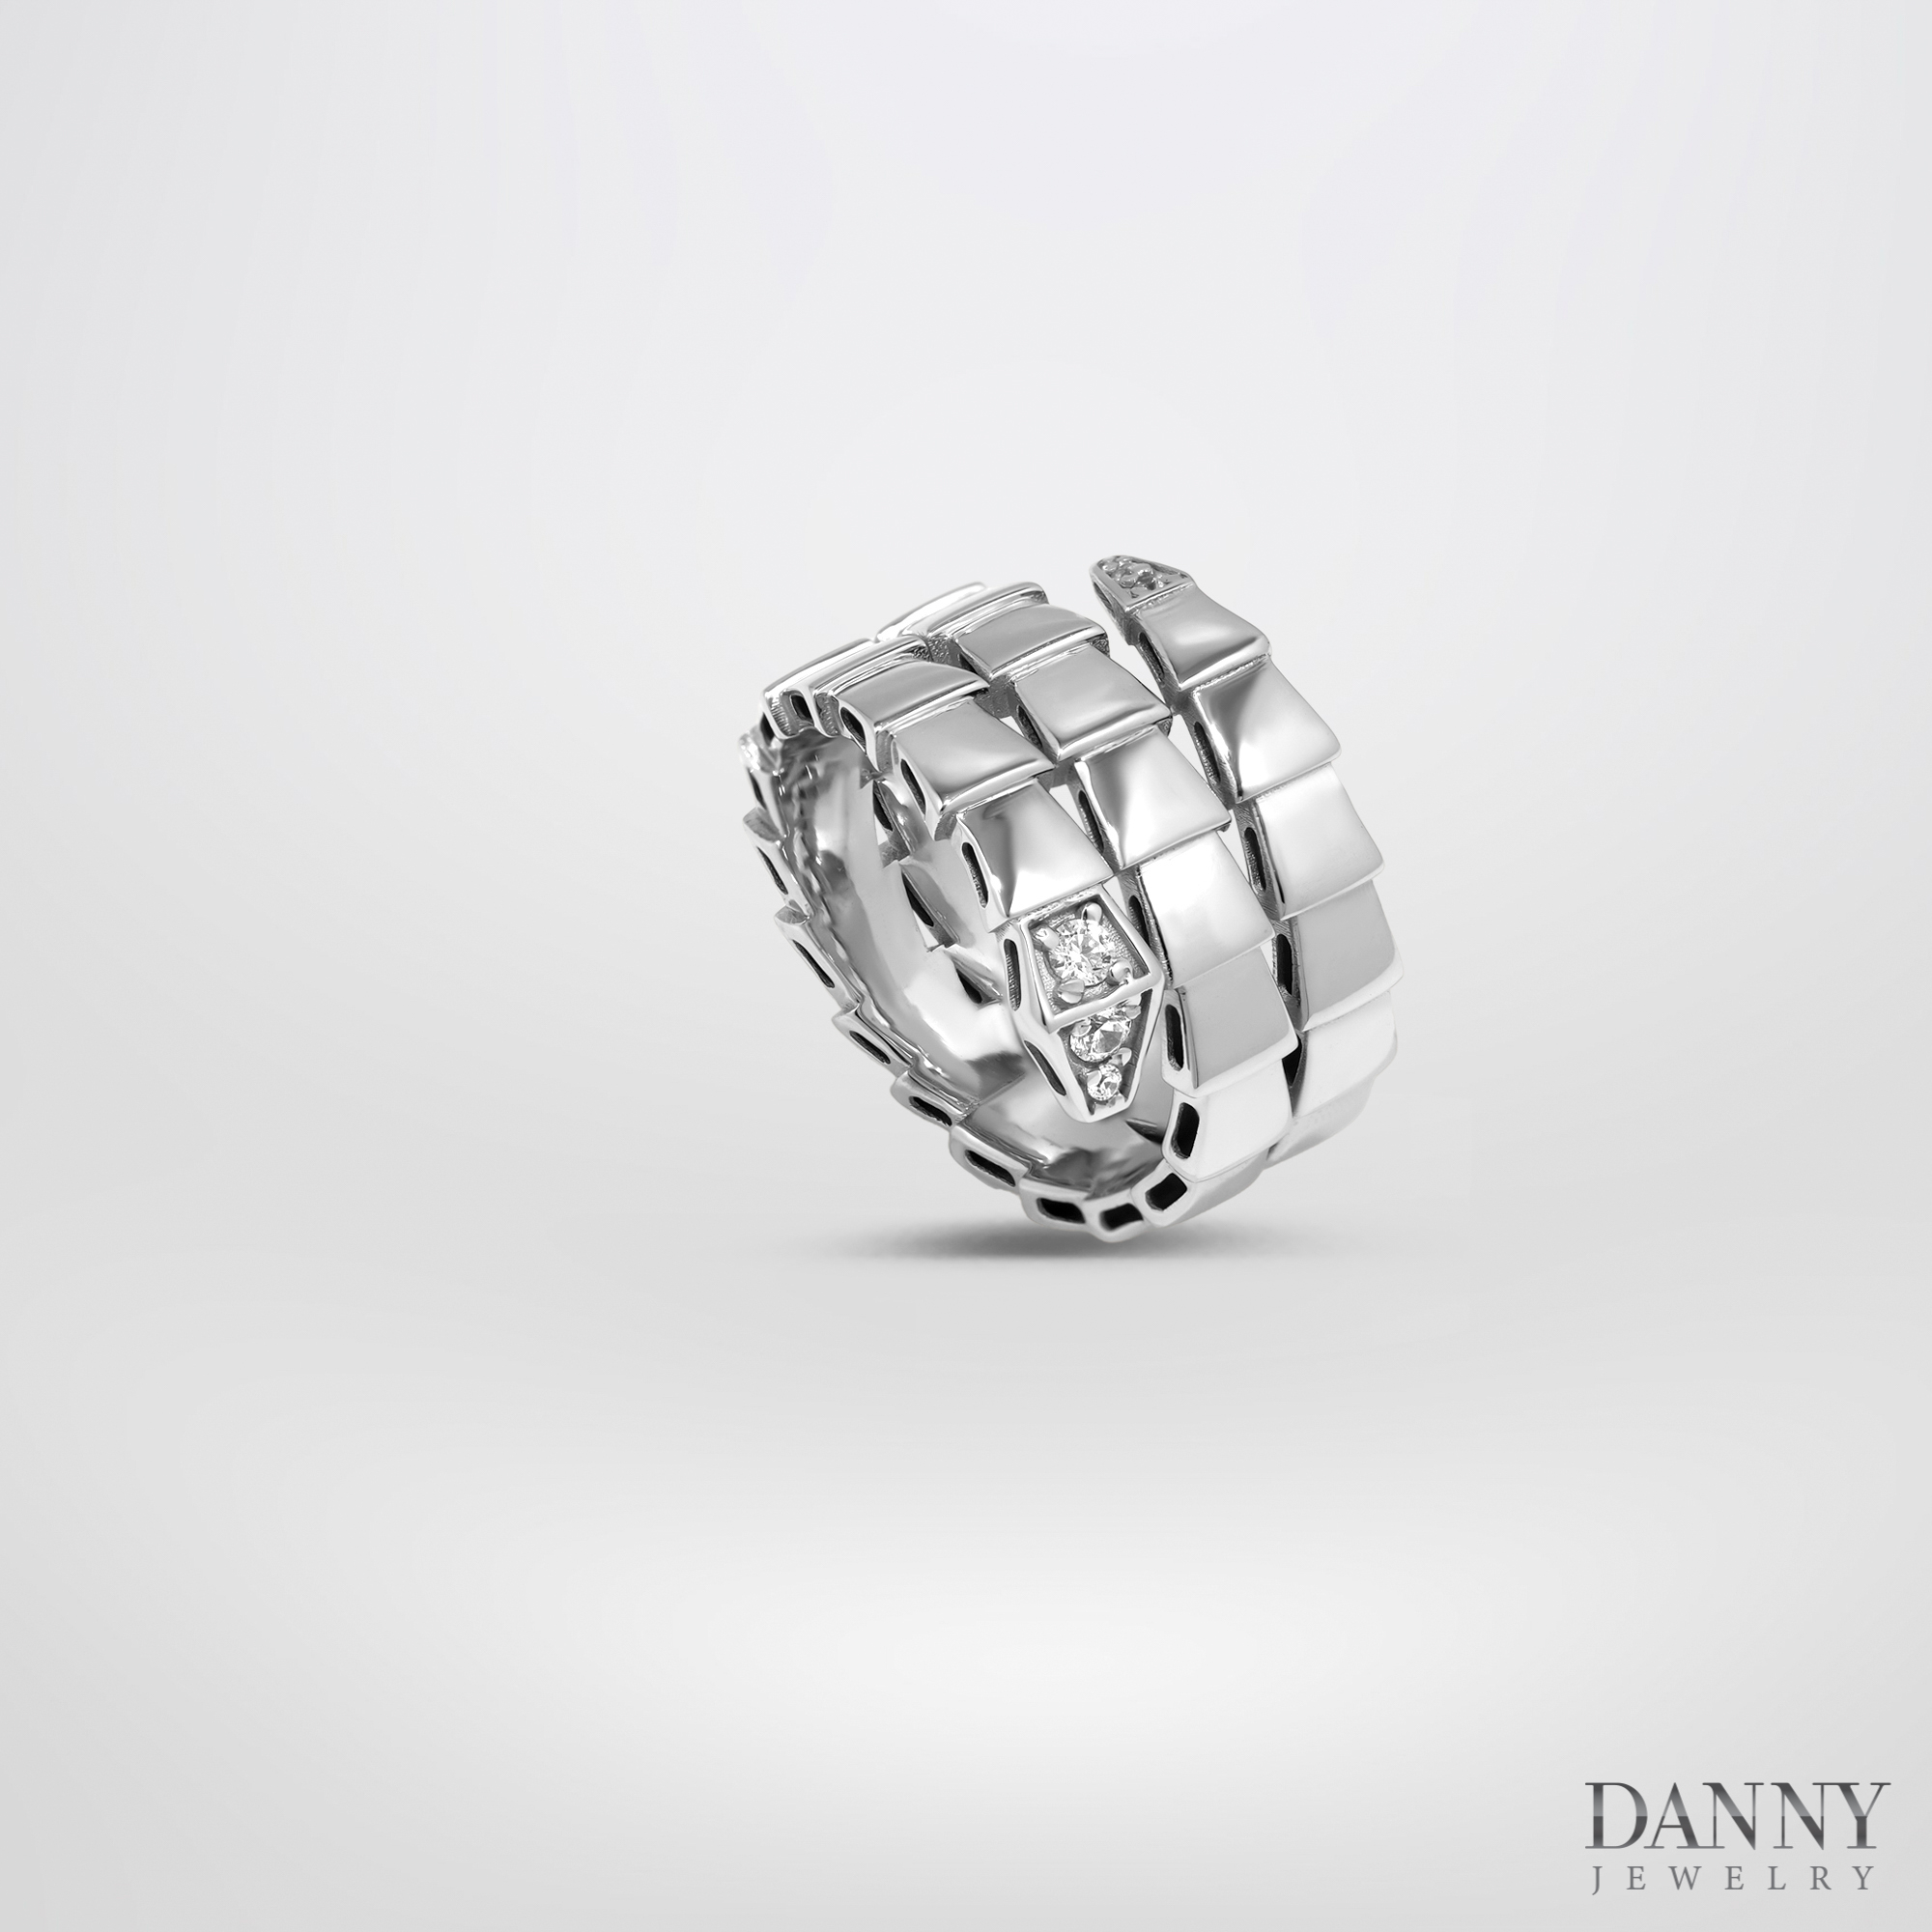 Hình ảnh Nhẫn Danny Jewelry Bạc Thổ Nhĩ Kỳ Xi Rhodium Đính Đá CZ Biểu Tượng Rắn N0004TNK